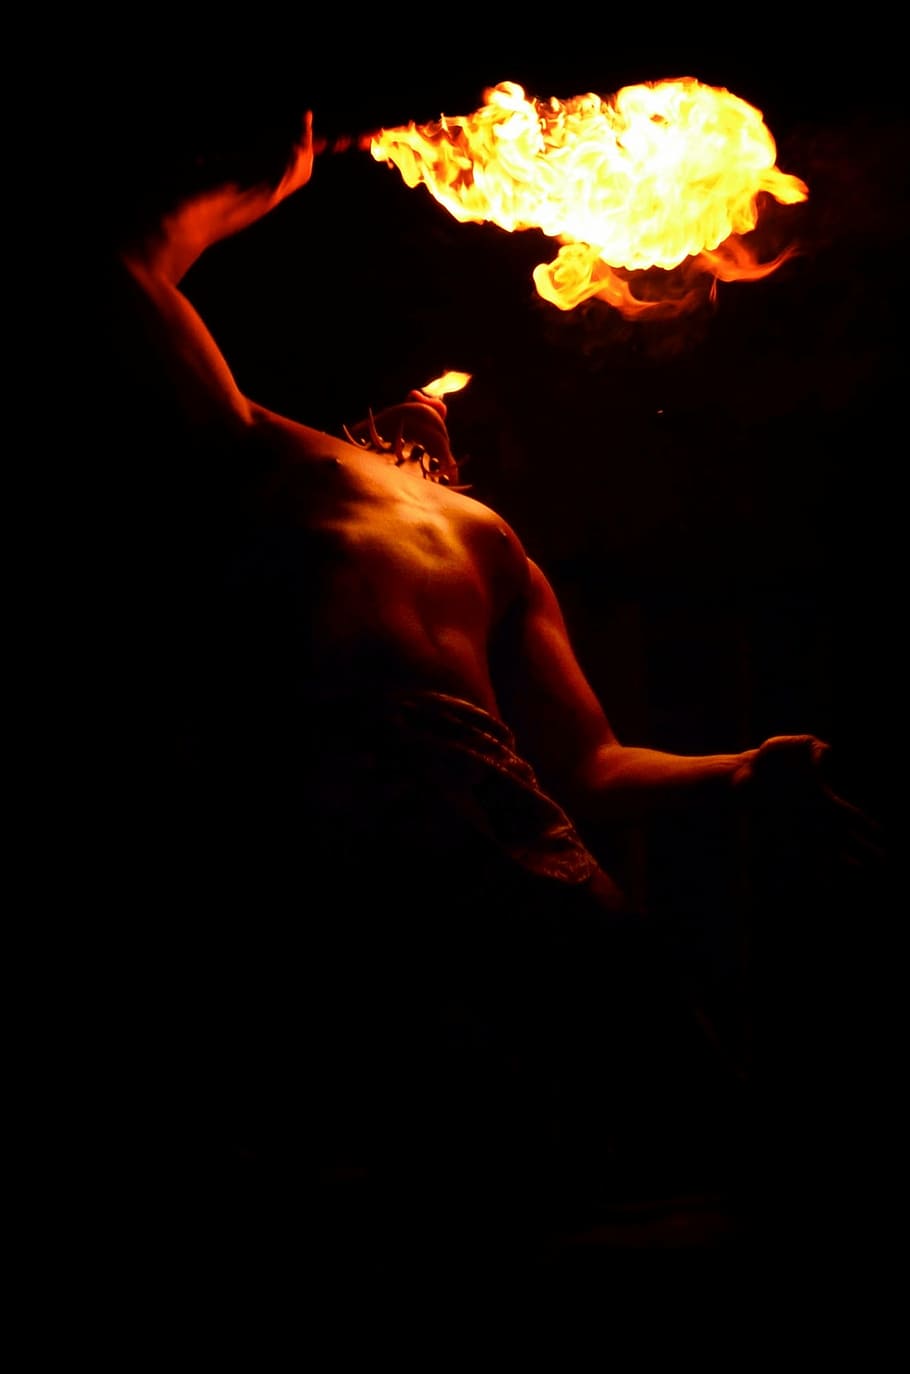 hombre jugando fuego, fuego, antorcha, hawaii, llama, rendimiento, luau, parte del cuerpo humano, peligro, calor - temperatura